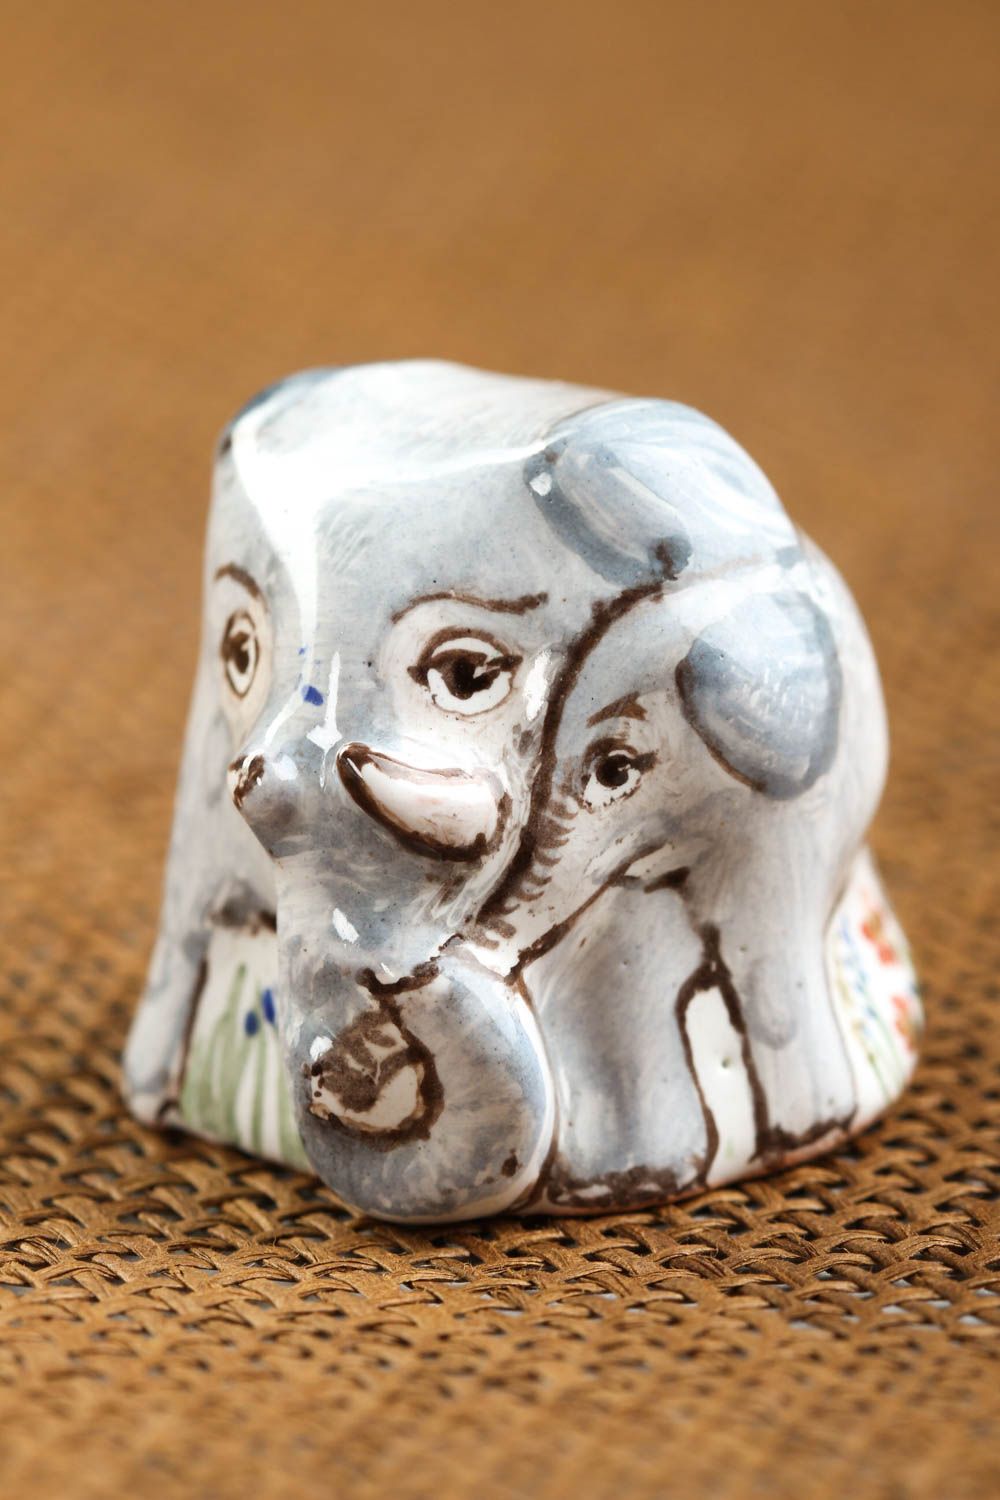 Коллекционный наперсток handmade декоративная глиняная фигурка изделие из глины фото 1